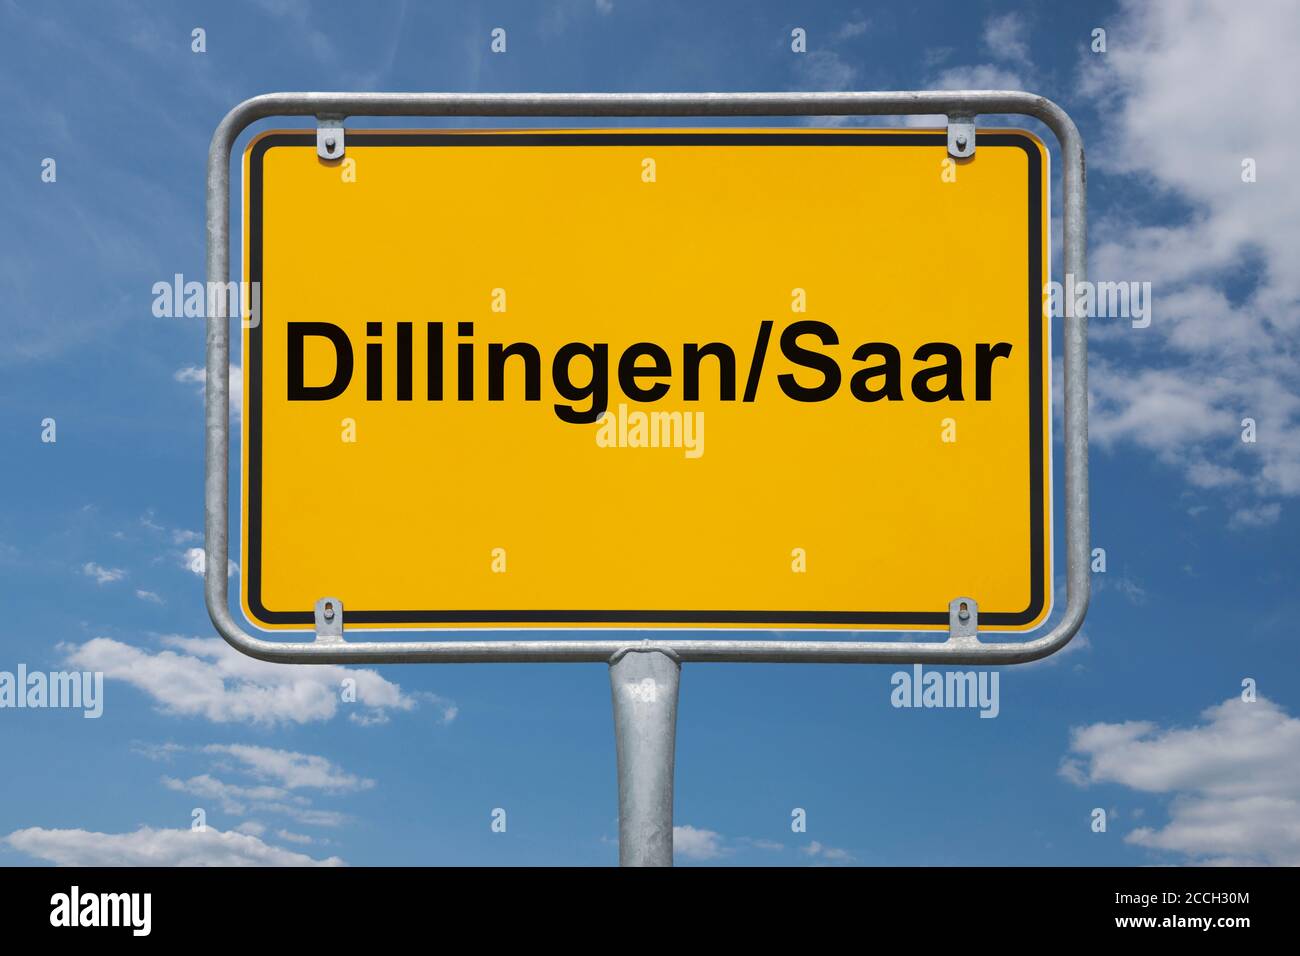 Ortstafel Dillingen/Saar, Saarland, Deutschland | Place name sign Dillingen/Saar, Saarland, Germany, Europe Stock Photo